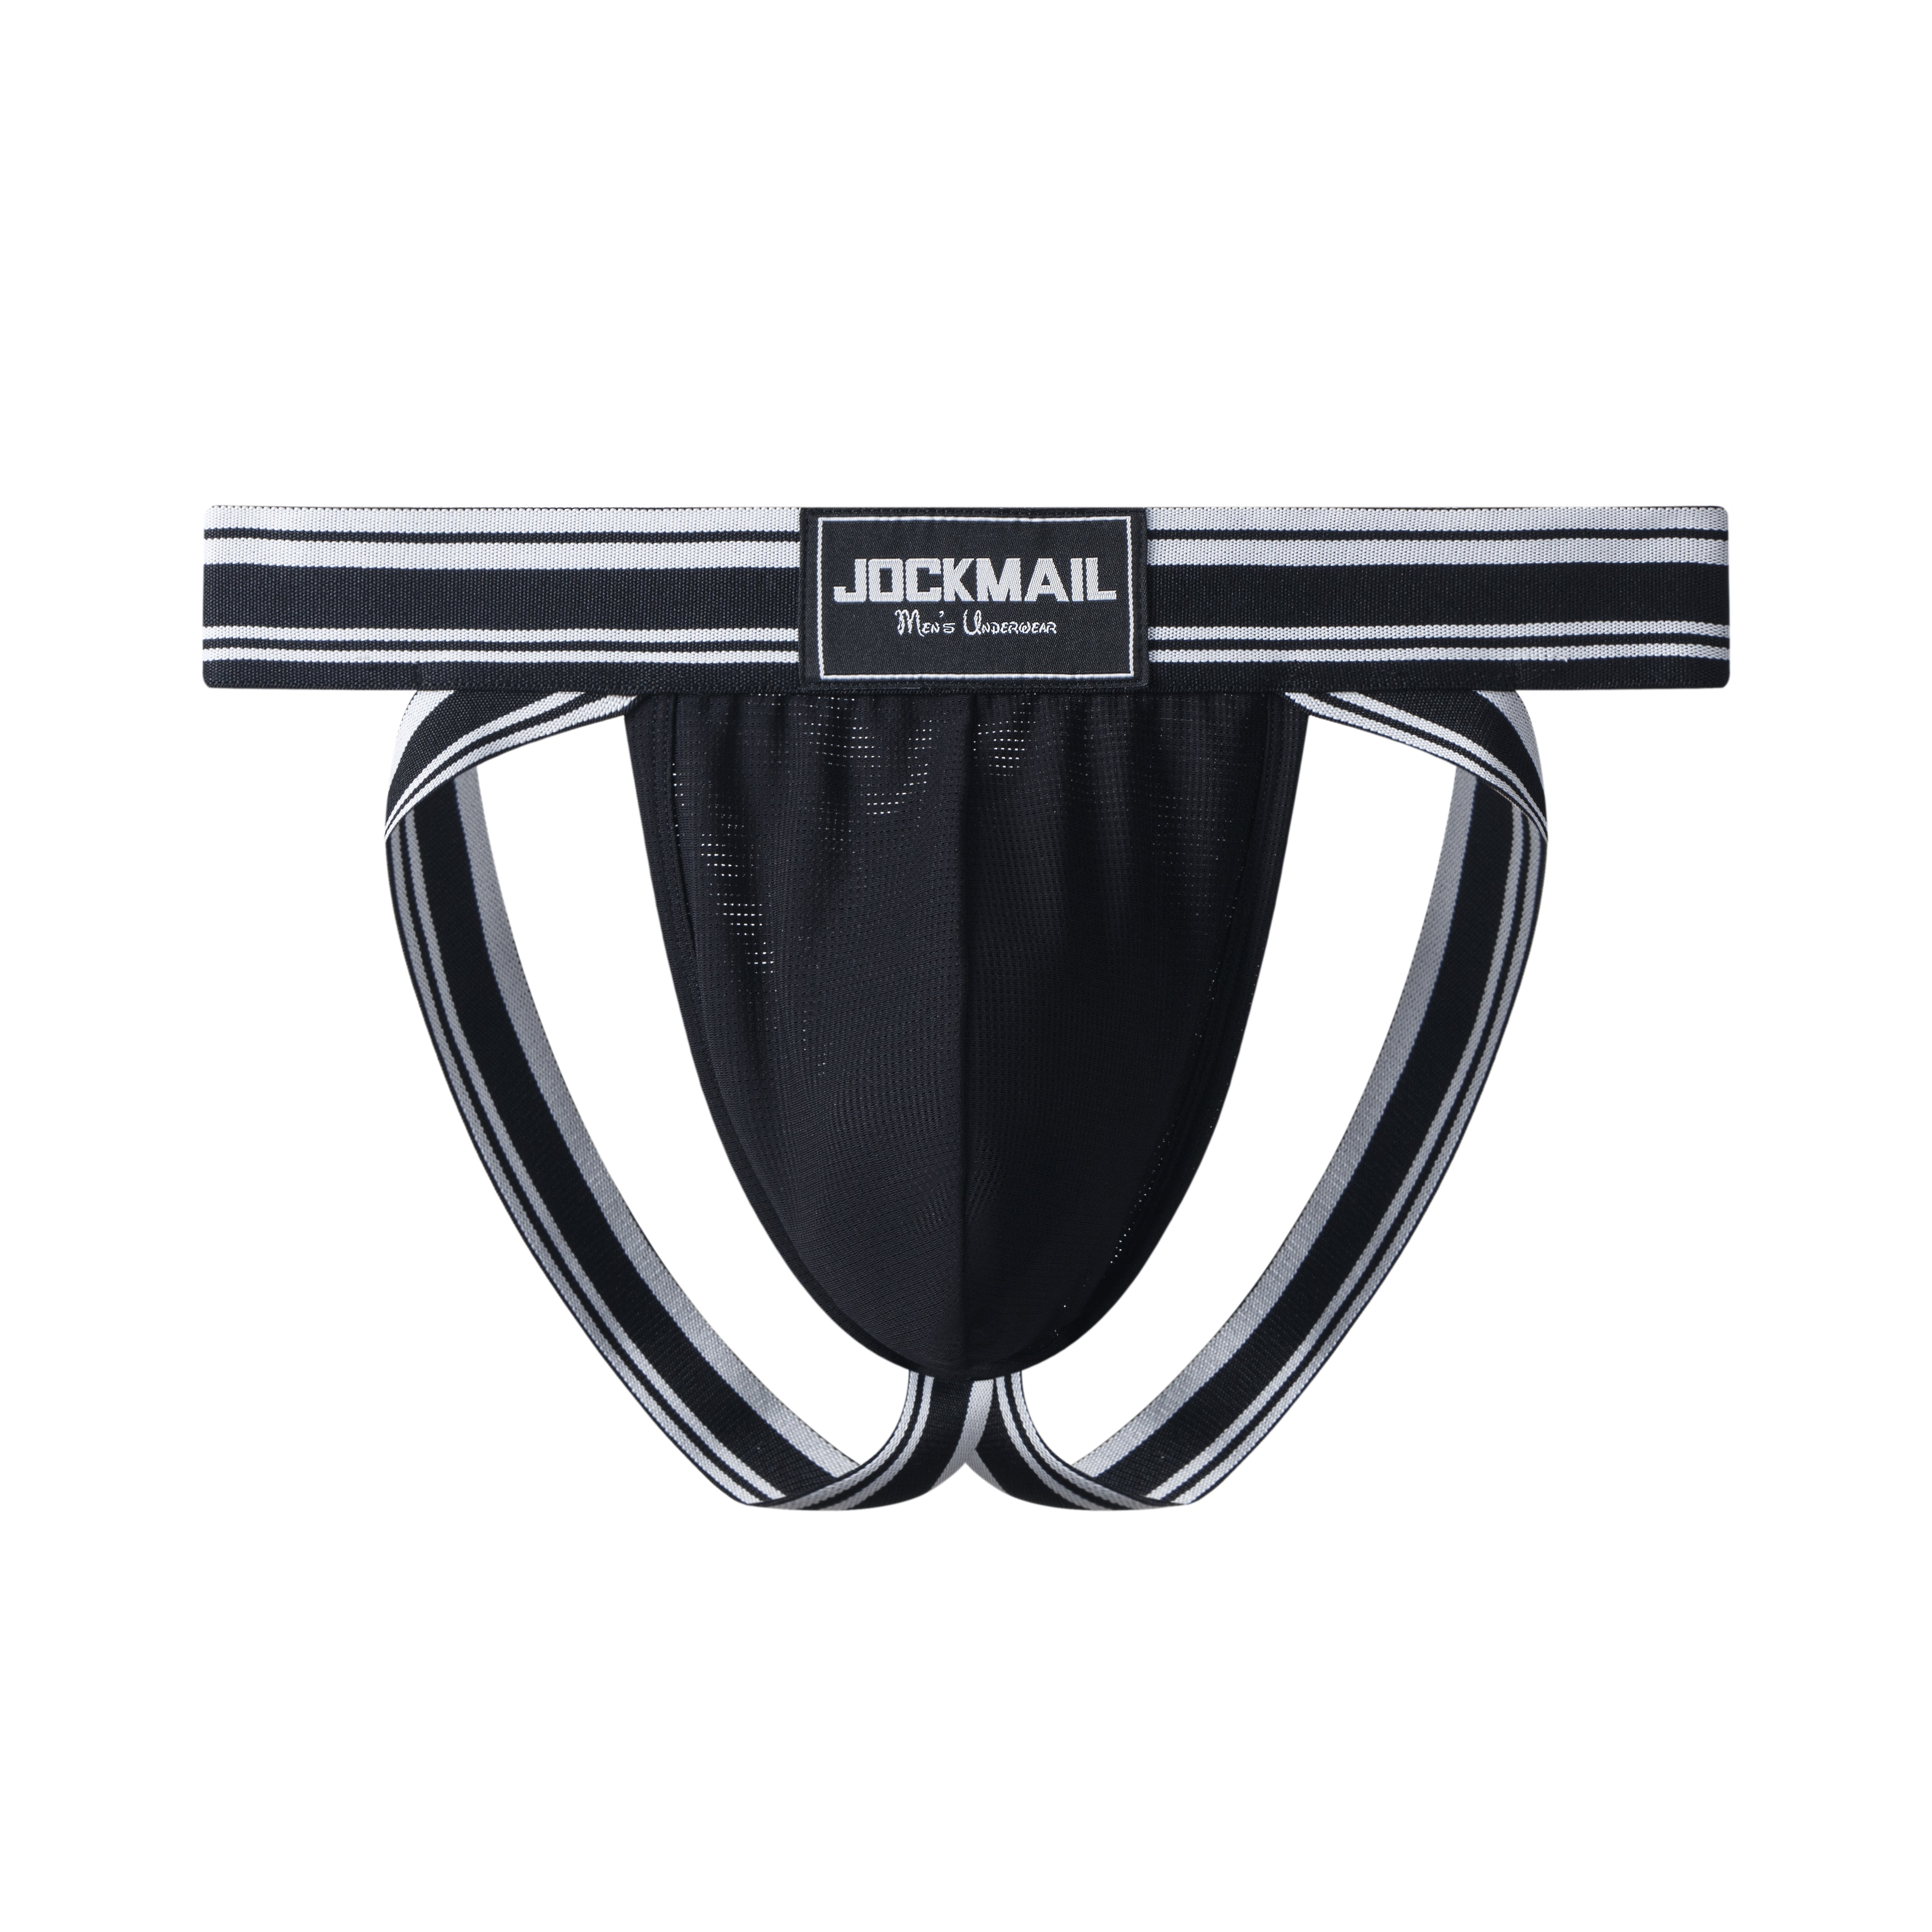 Men's Sexy Underwear - Jockmail Neon Mesh Briefs 4-Pack – Oh My!